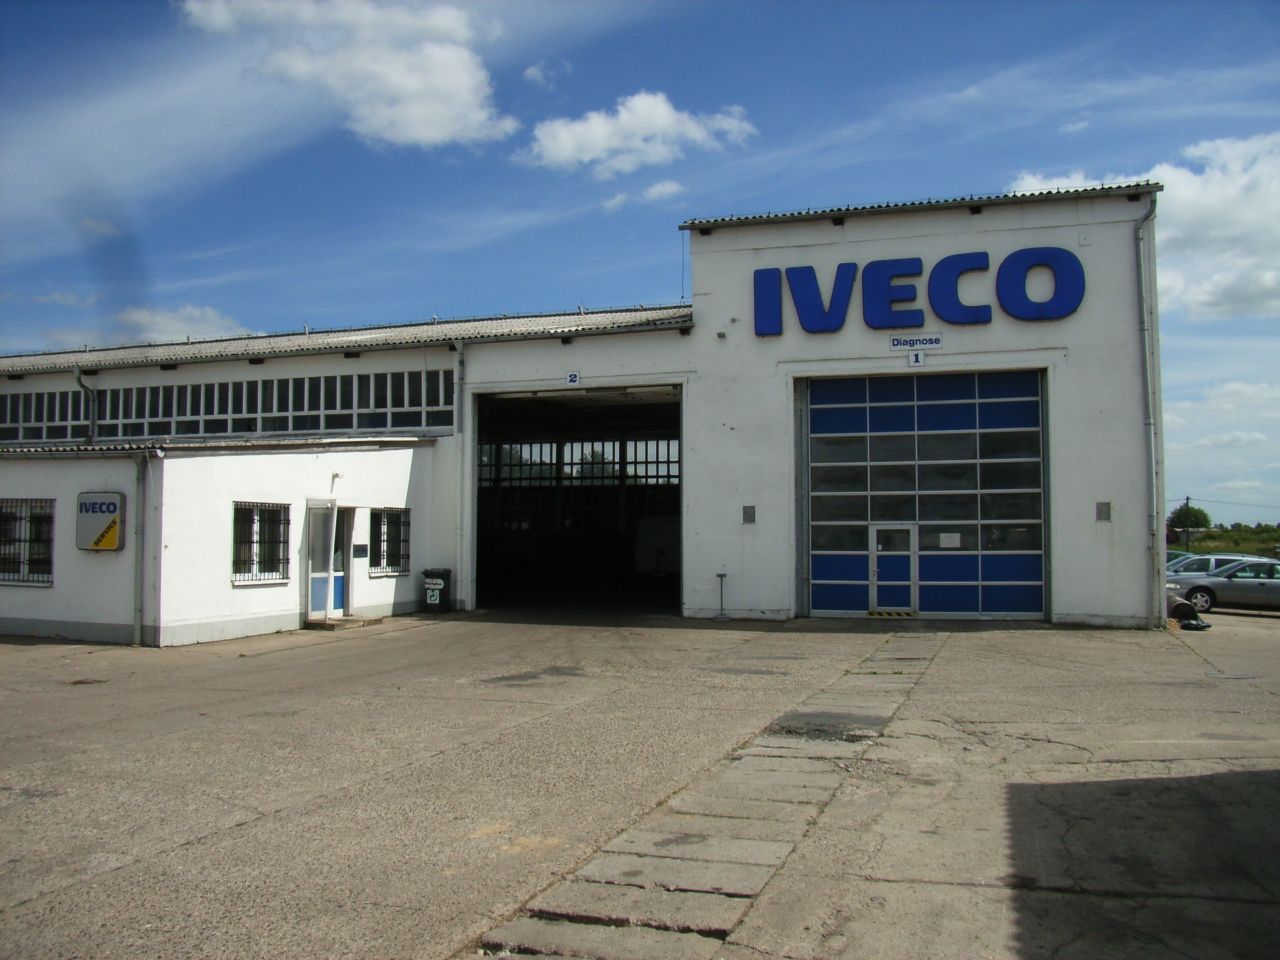 Ein weißes Gebäude mit dem Wort Iveco darauf